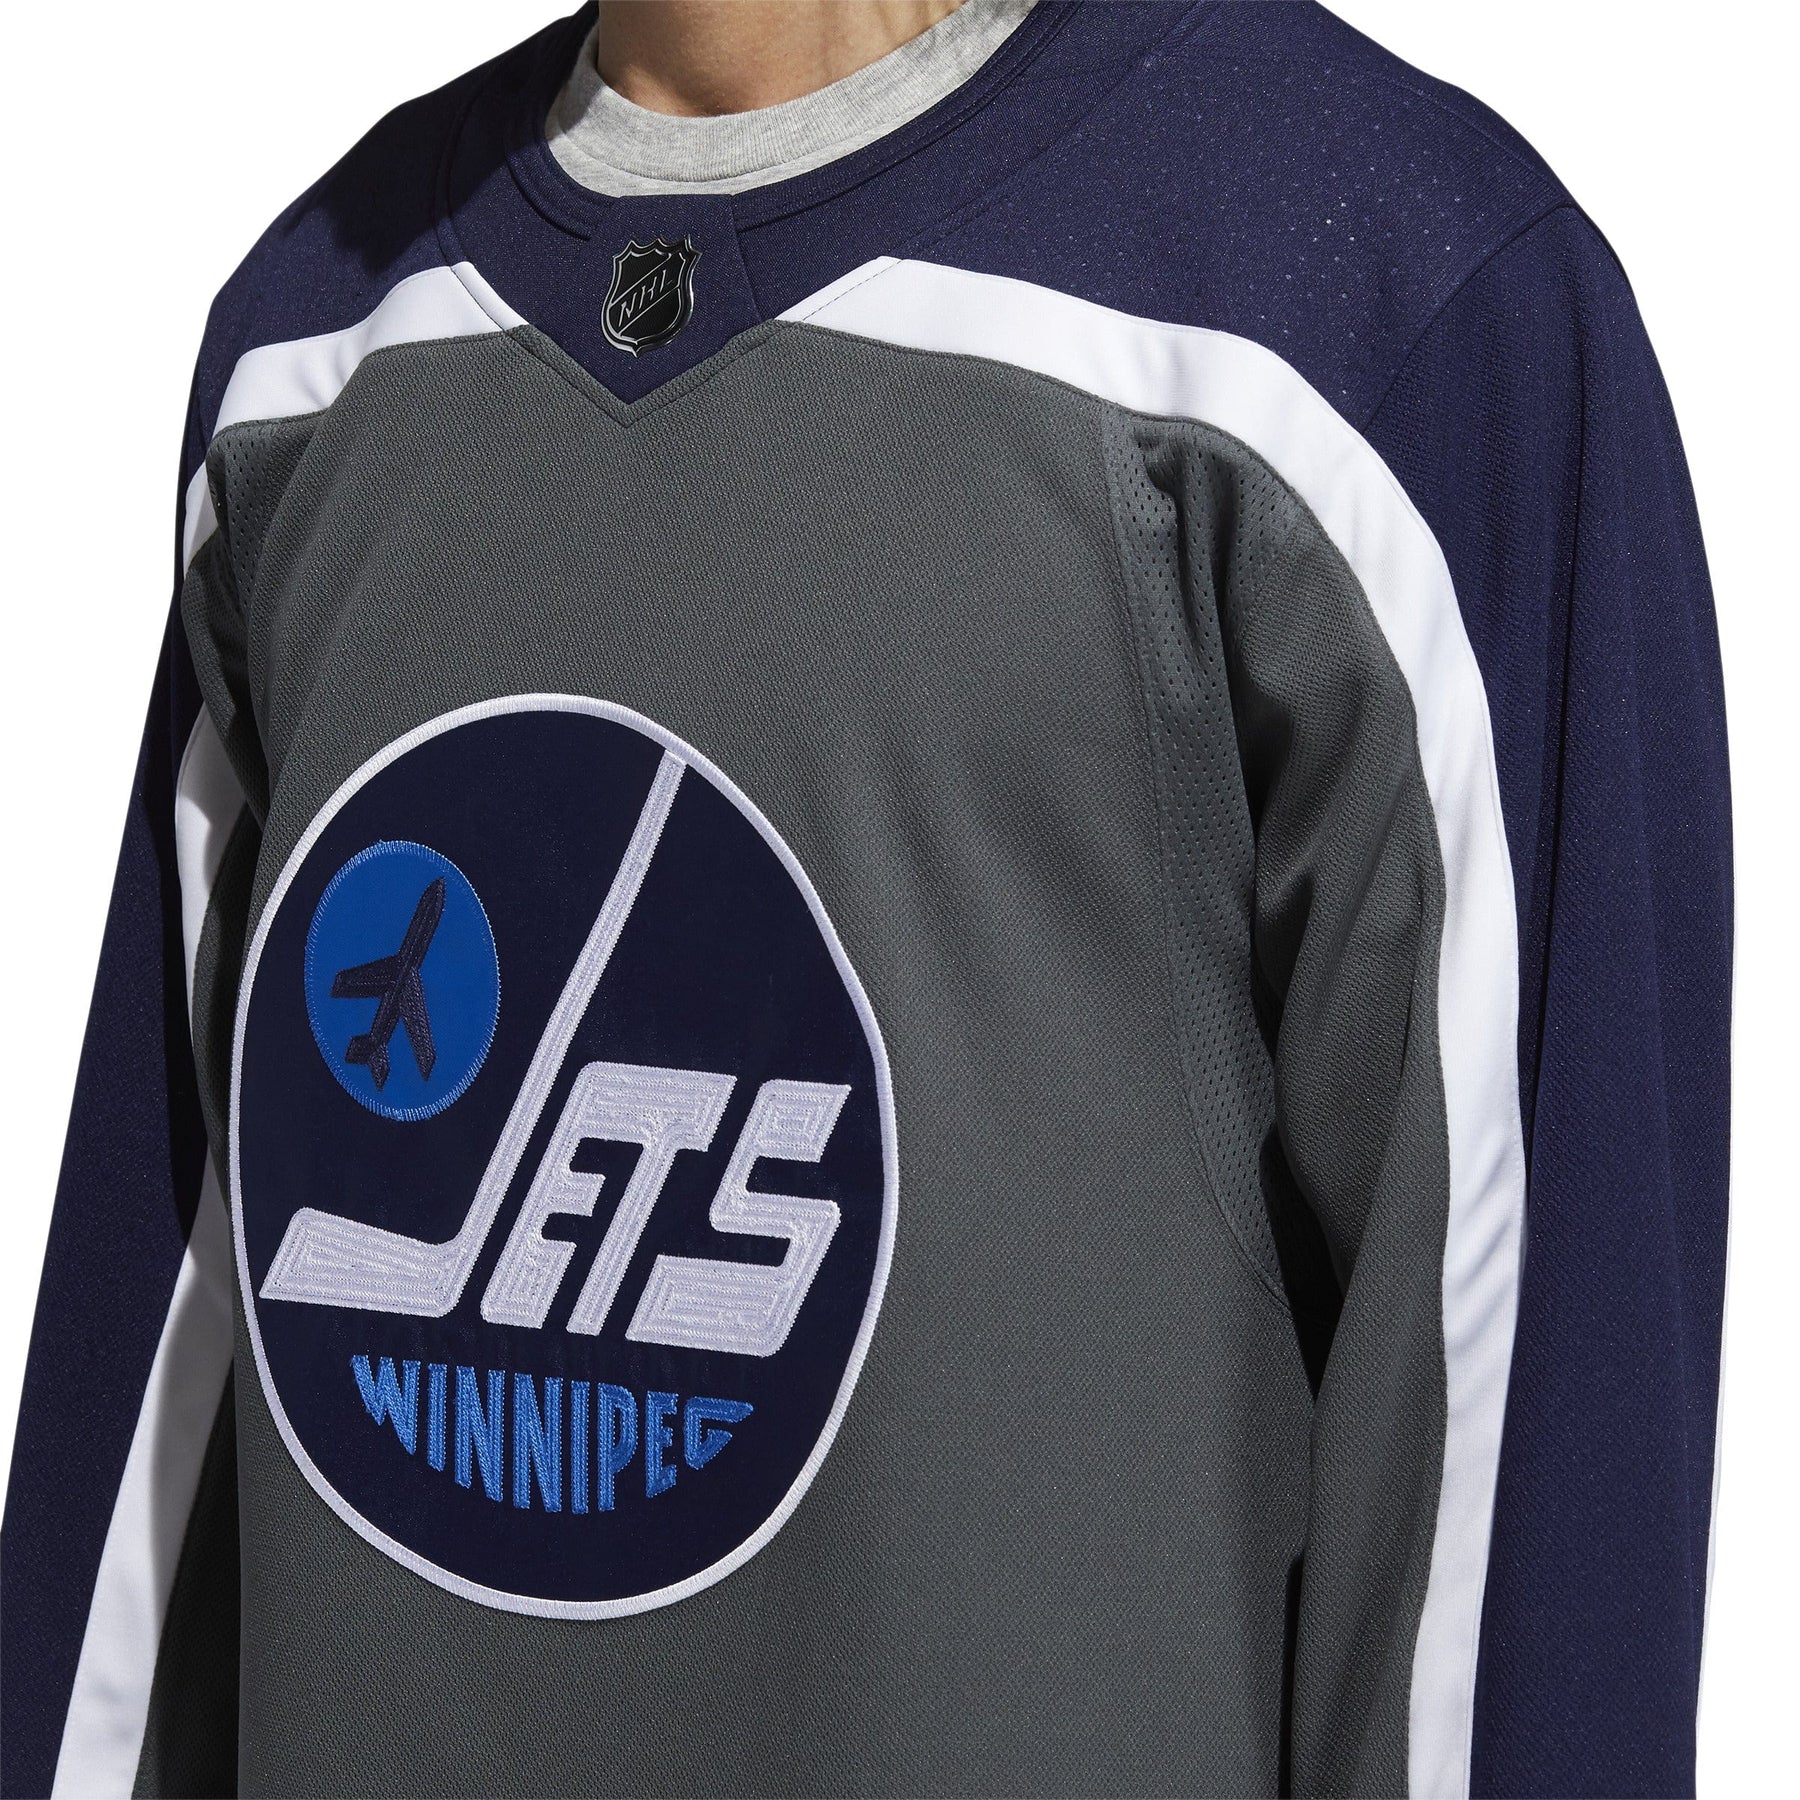 Winnipeg Jets on X: WPG x RR x '79 adidas #ReverseRetro jerseys